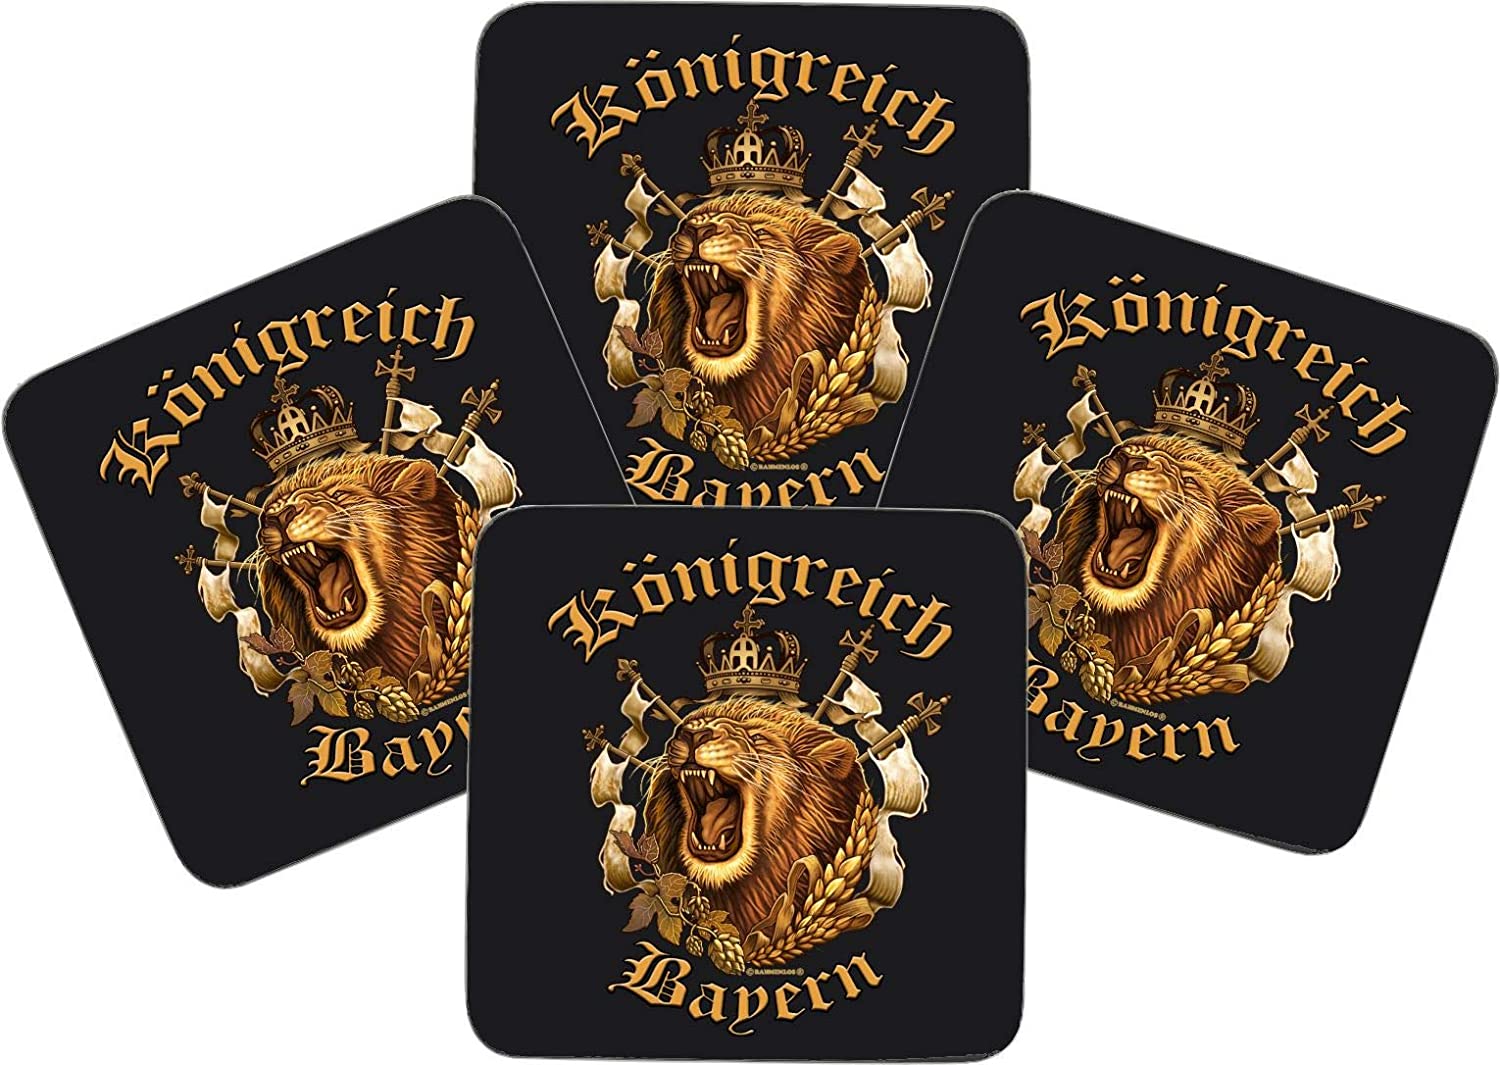 Untersetzer MDF/Kork - Bedruckt - 4er-Set - MDF-Platte 9,5cmx9,5cm - mit Korkrückseite zum Schutz - für den Echten Bayern Fan - Königreich Bayern